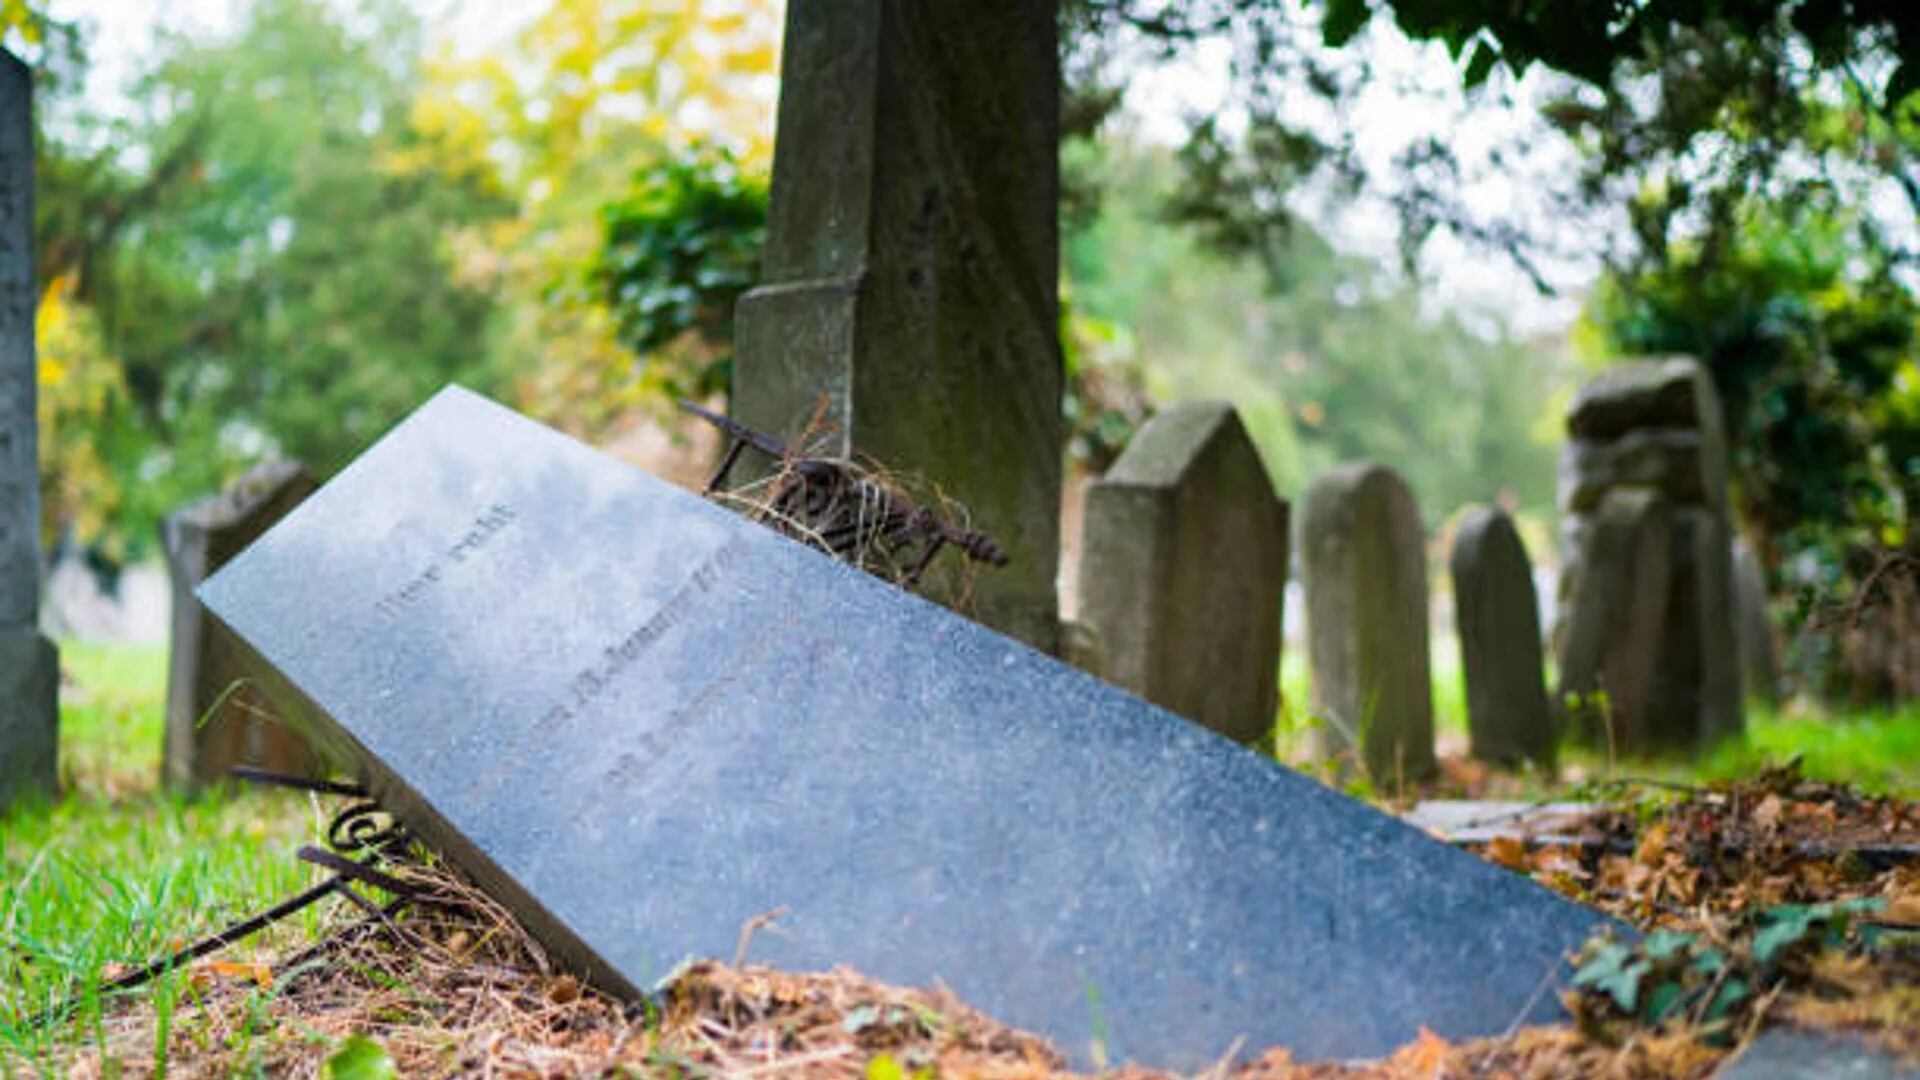 Descubren elementos usados para brujería en un cementerio del Tolima: “Es macabro lo que encontramos”